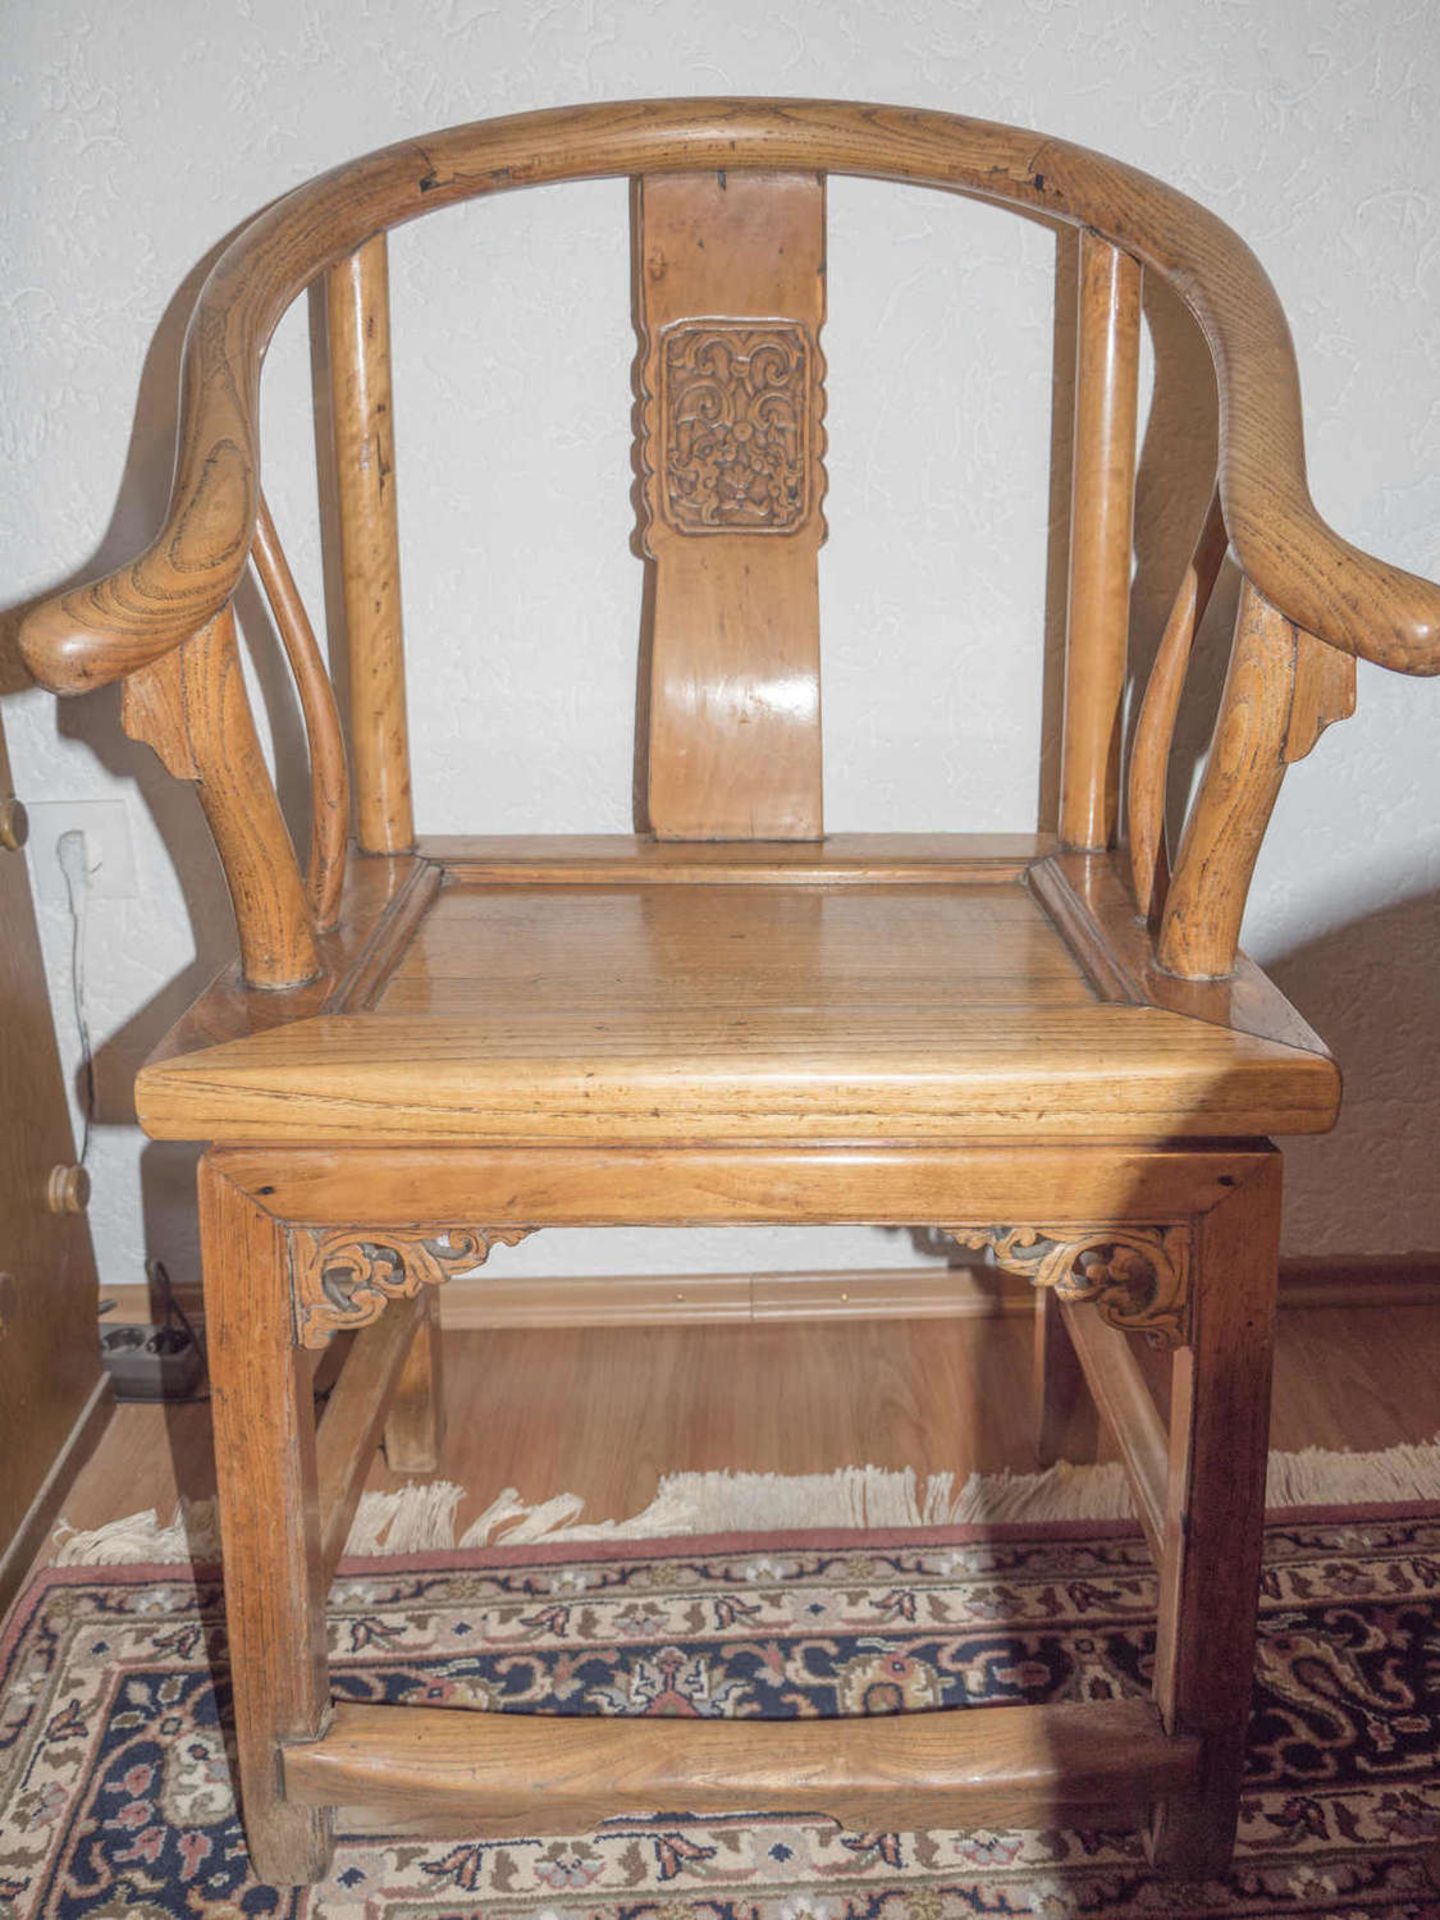 Zwei asiatische Lehnen - Stühle mit Ornament. H: ca. 93 cm, T: ca. 45 cm, B: ca. 56 cm. Nur